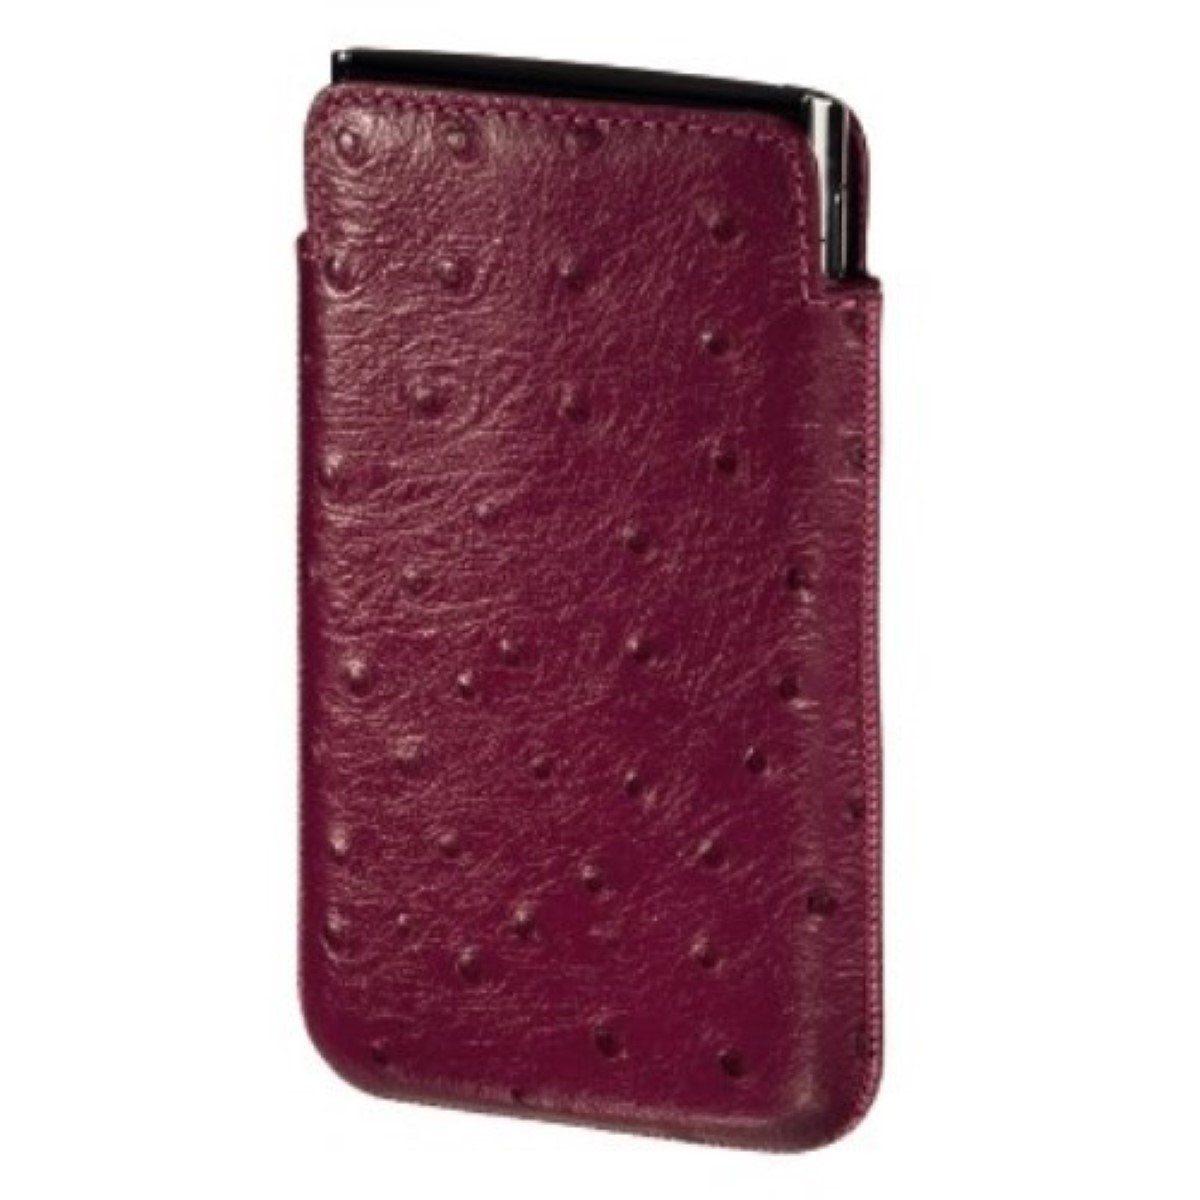 Hama Handyhülle Leder Universal Tasche Pouch Famous Pink Gr L, Schutz-Hülle Etui für klassisches Handy MP3 MP4-Player Audio-Player